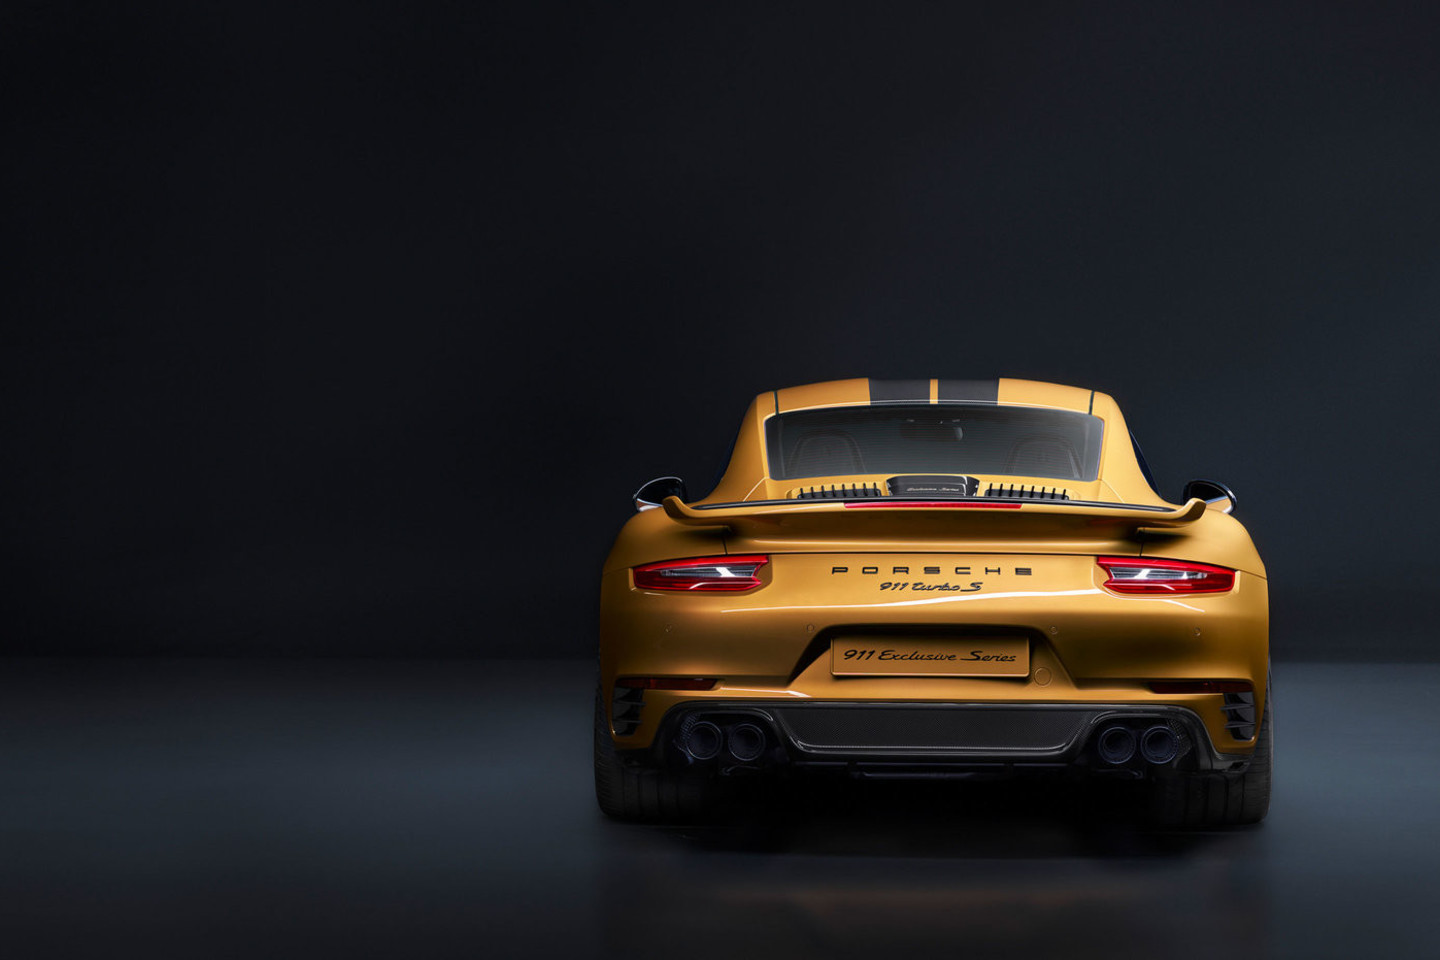 „Porsche 911 Turbo S Exclusive Series“ pirkėjams taip siūlomi prie automobilio priderinti lagaminai ir laikrodis. <br>Gamintojo nuotr.